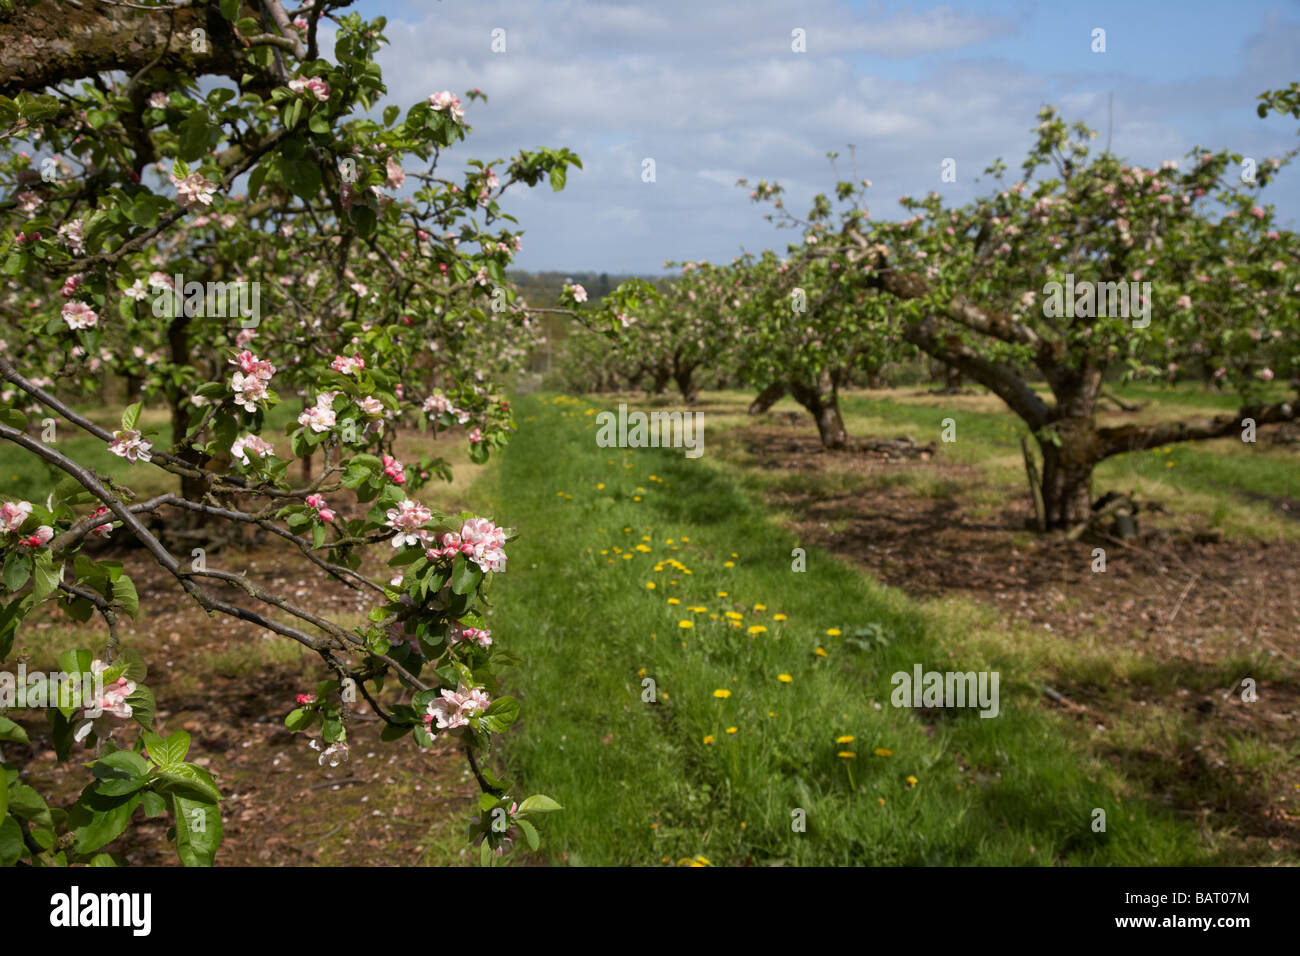 Zeile der Apfelbäume in voller Blüte in Bramley Apfelplantage in County Armagh Nordirland Vereinigtes Königreich Stockfoto